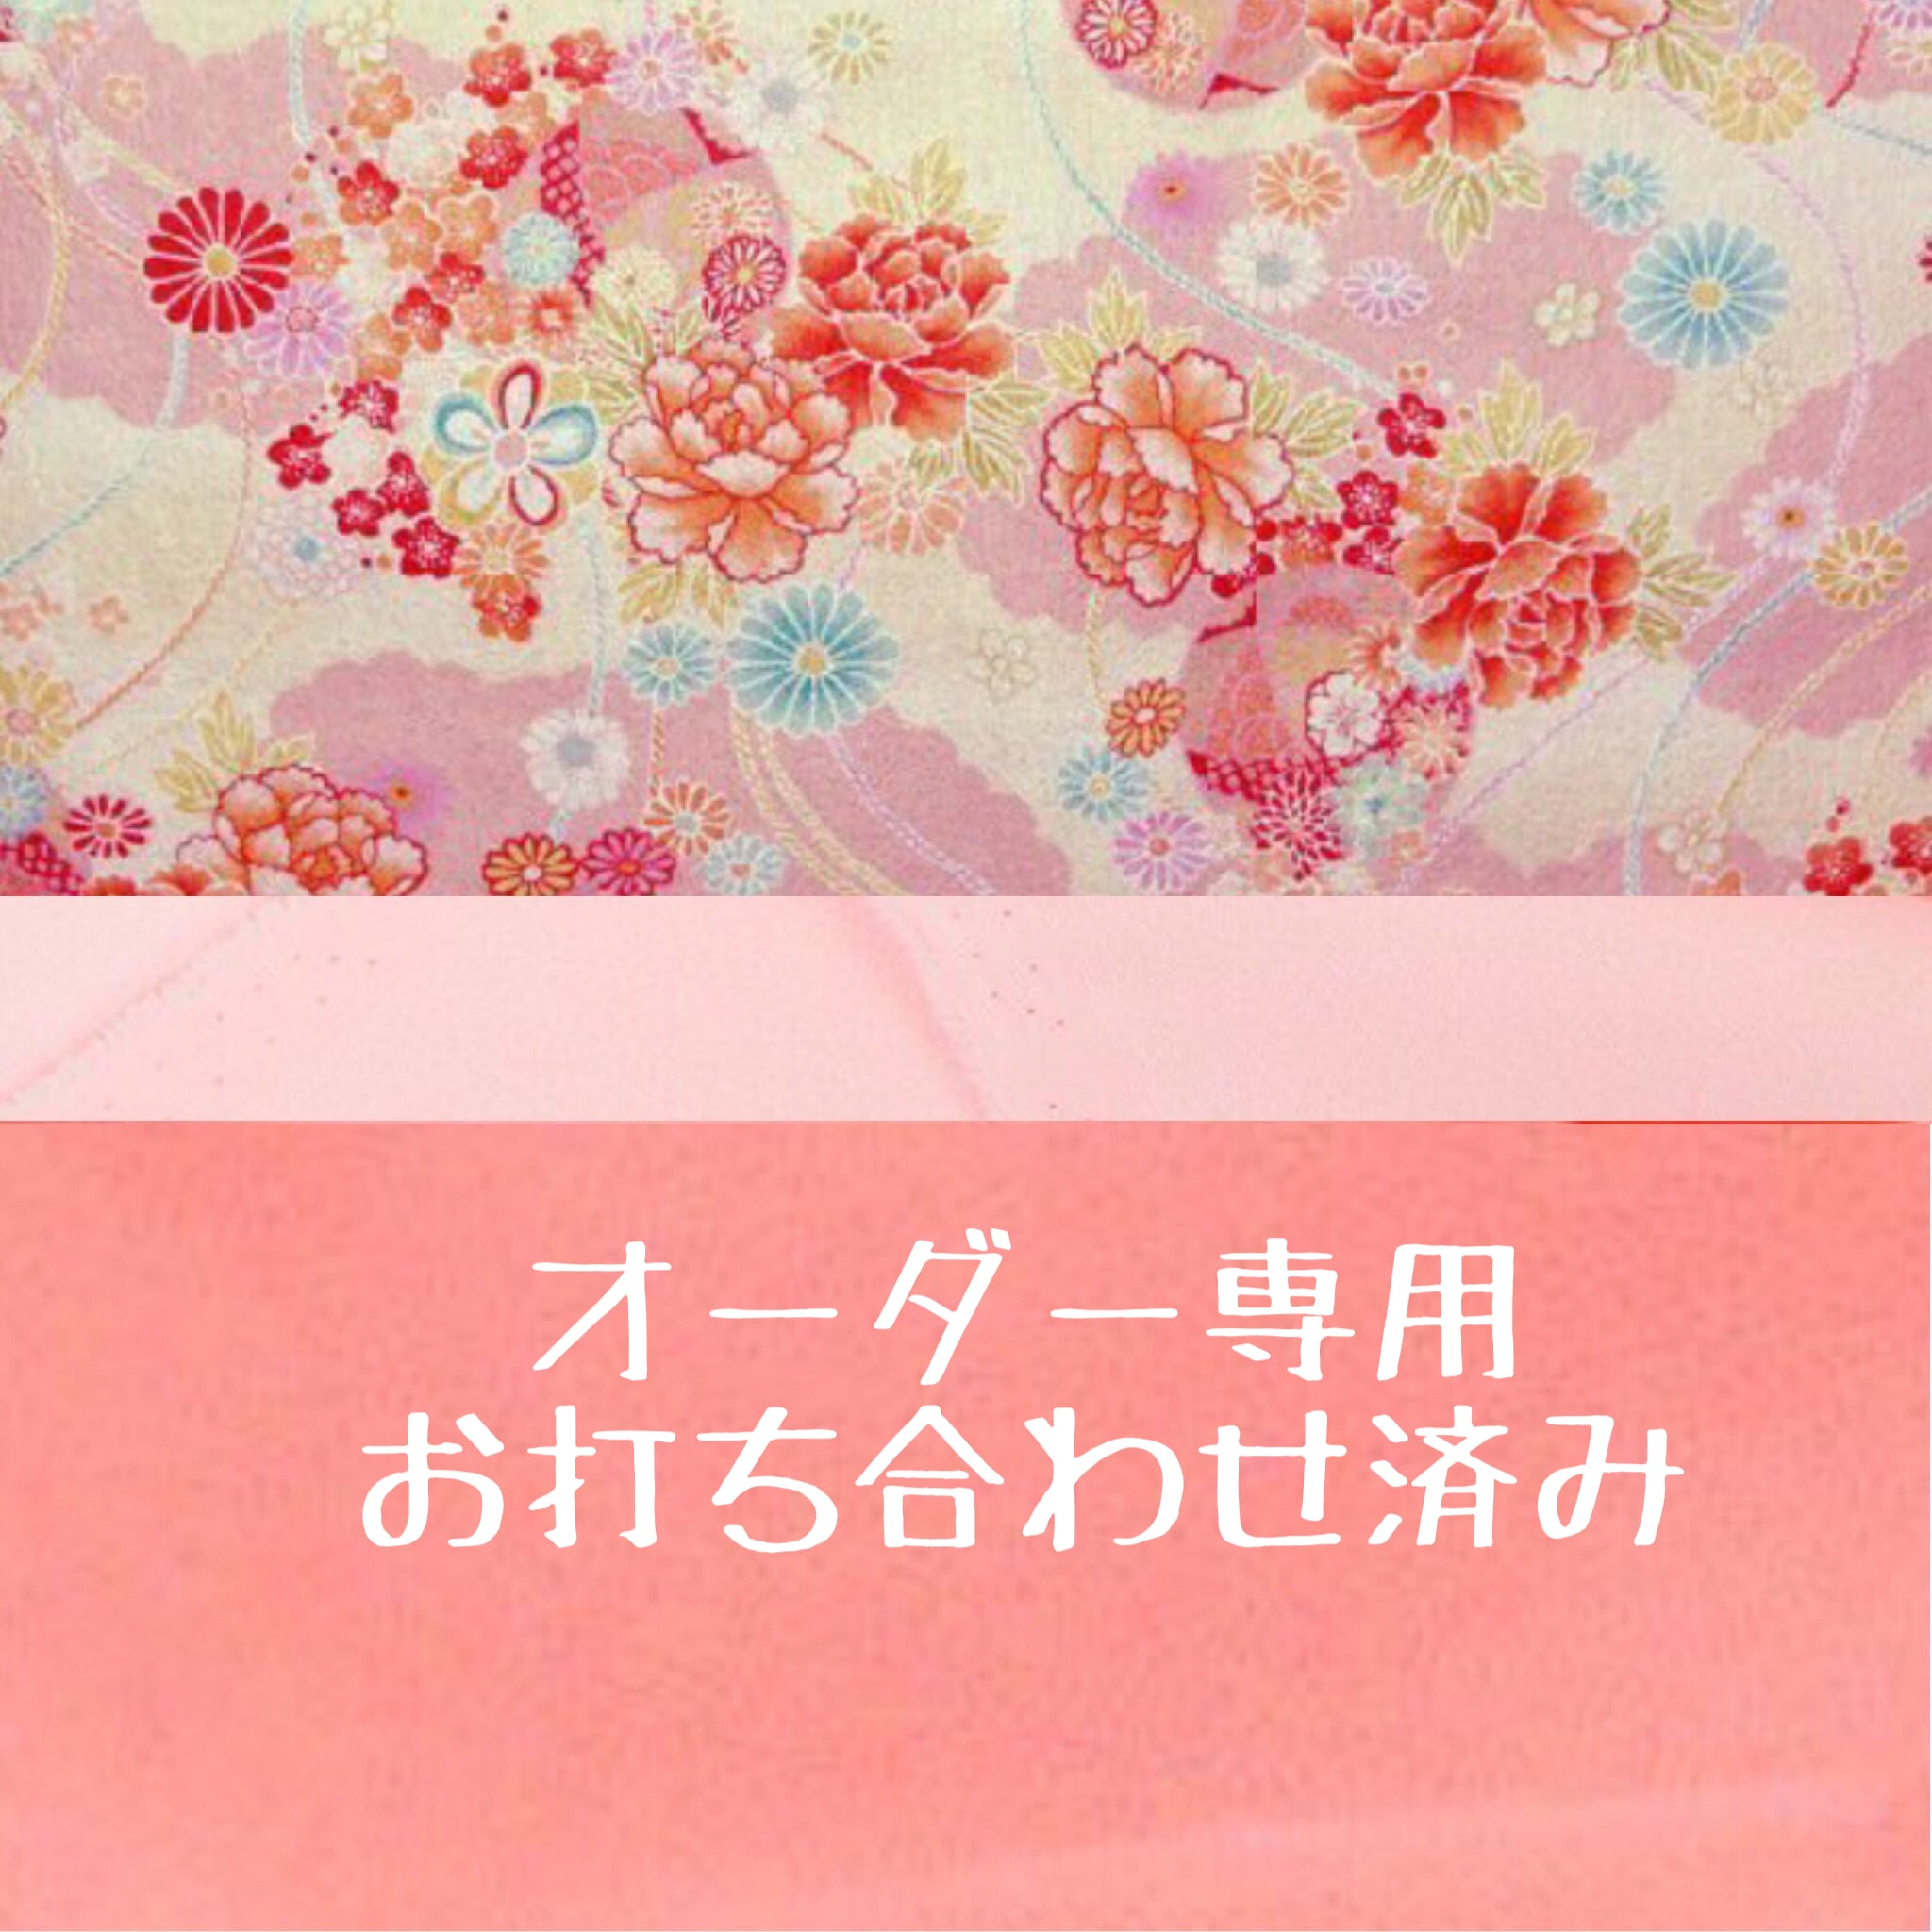 オーダー専用 袴と靴下セット a.m.baby hakama ベビー袴 Sサイズ80-95